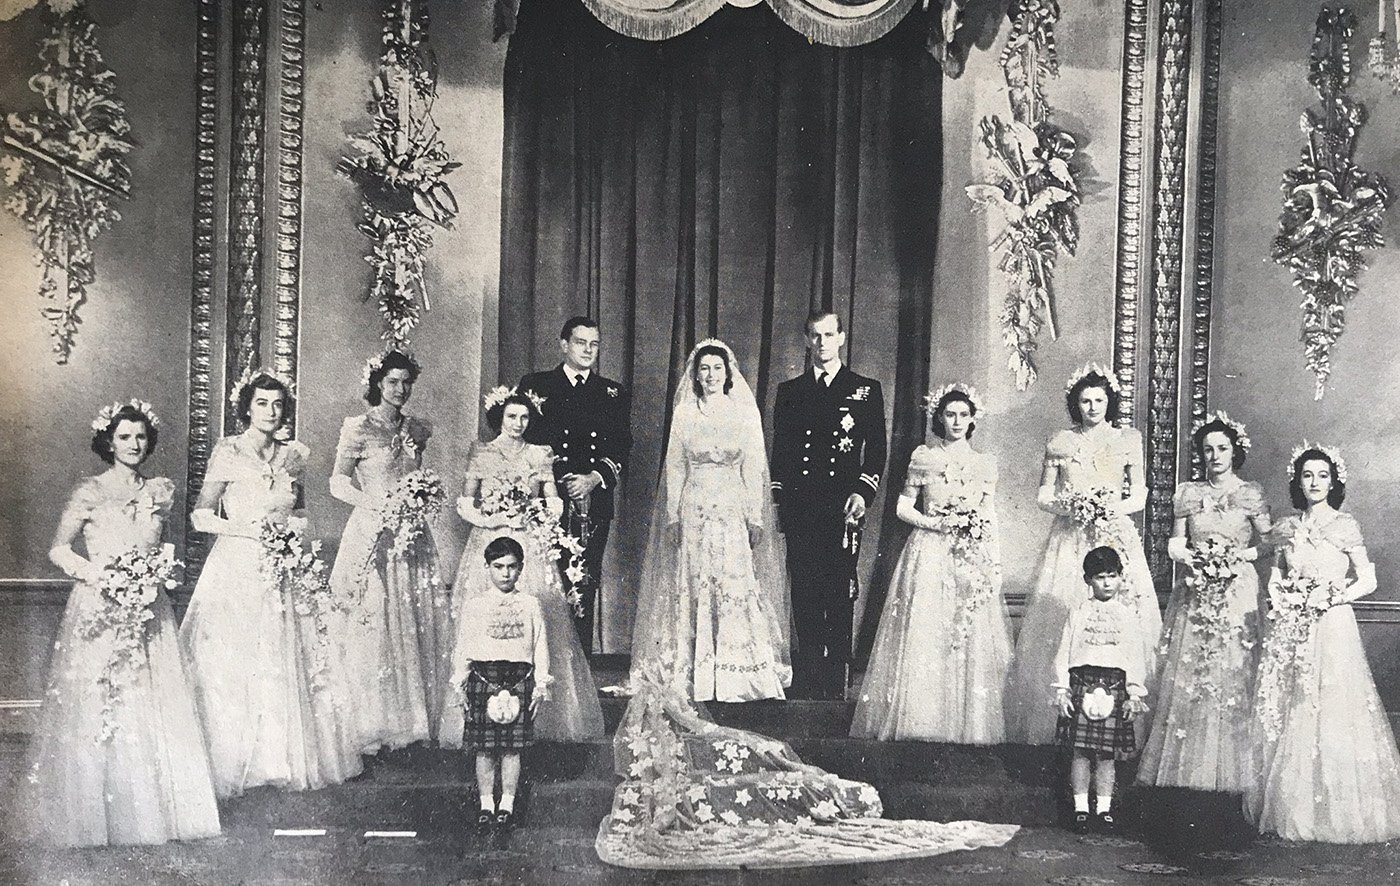 Queen Elizabeth II's wedding. I Image: Getty Images.